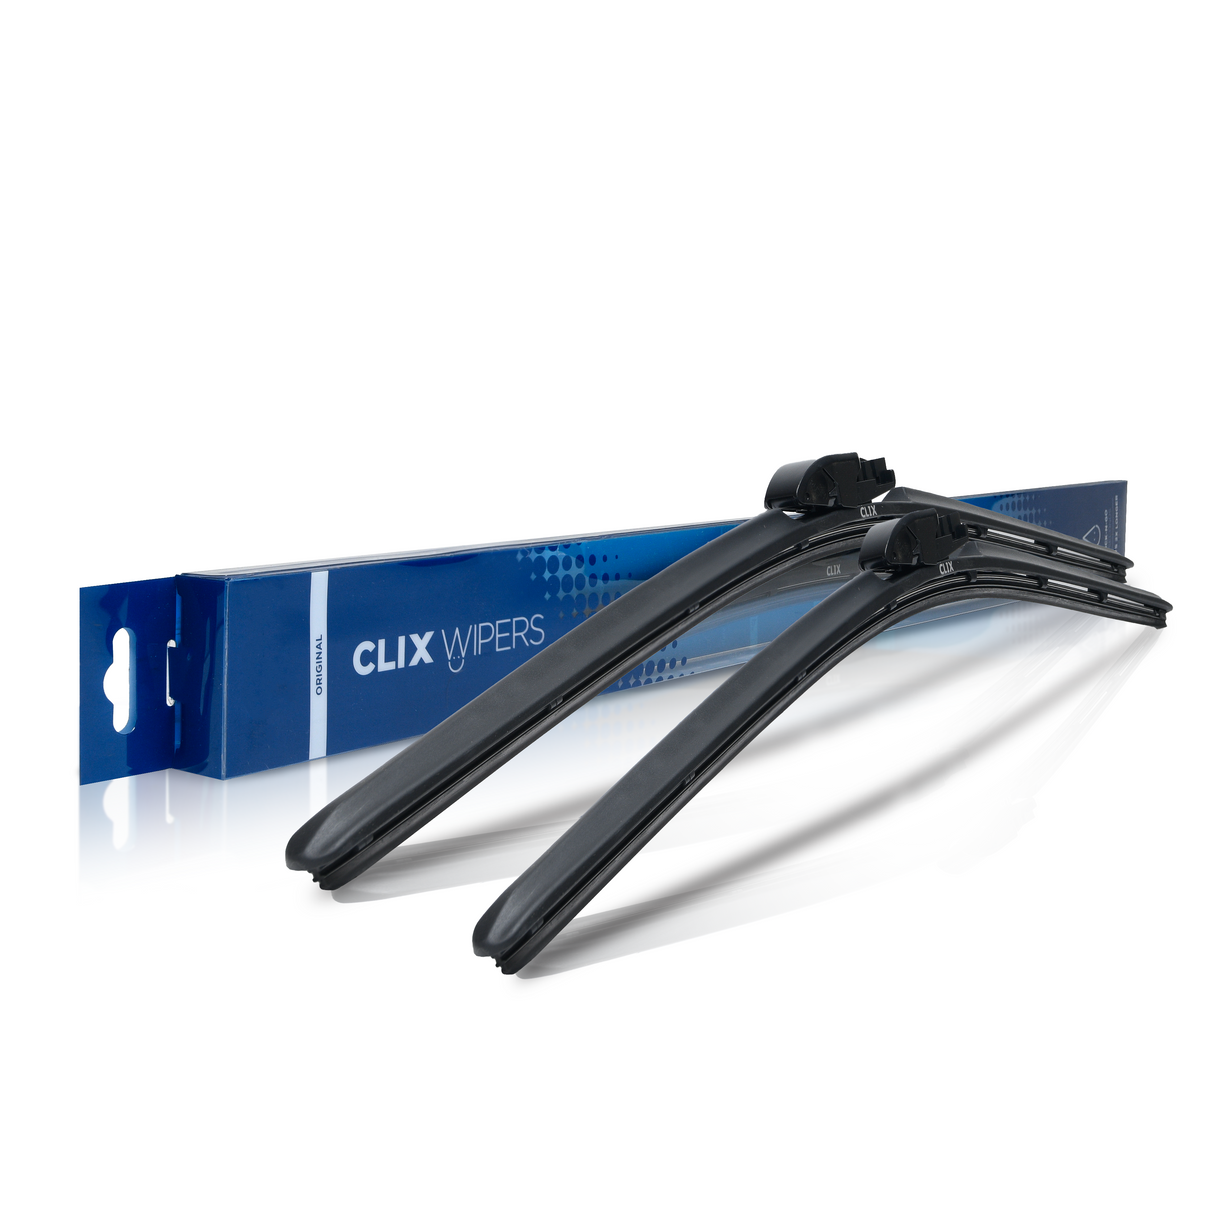 Isuzu Vehi-Cross Windshield Wiper Blades - ClixAuto